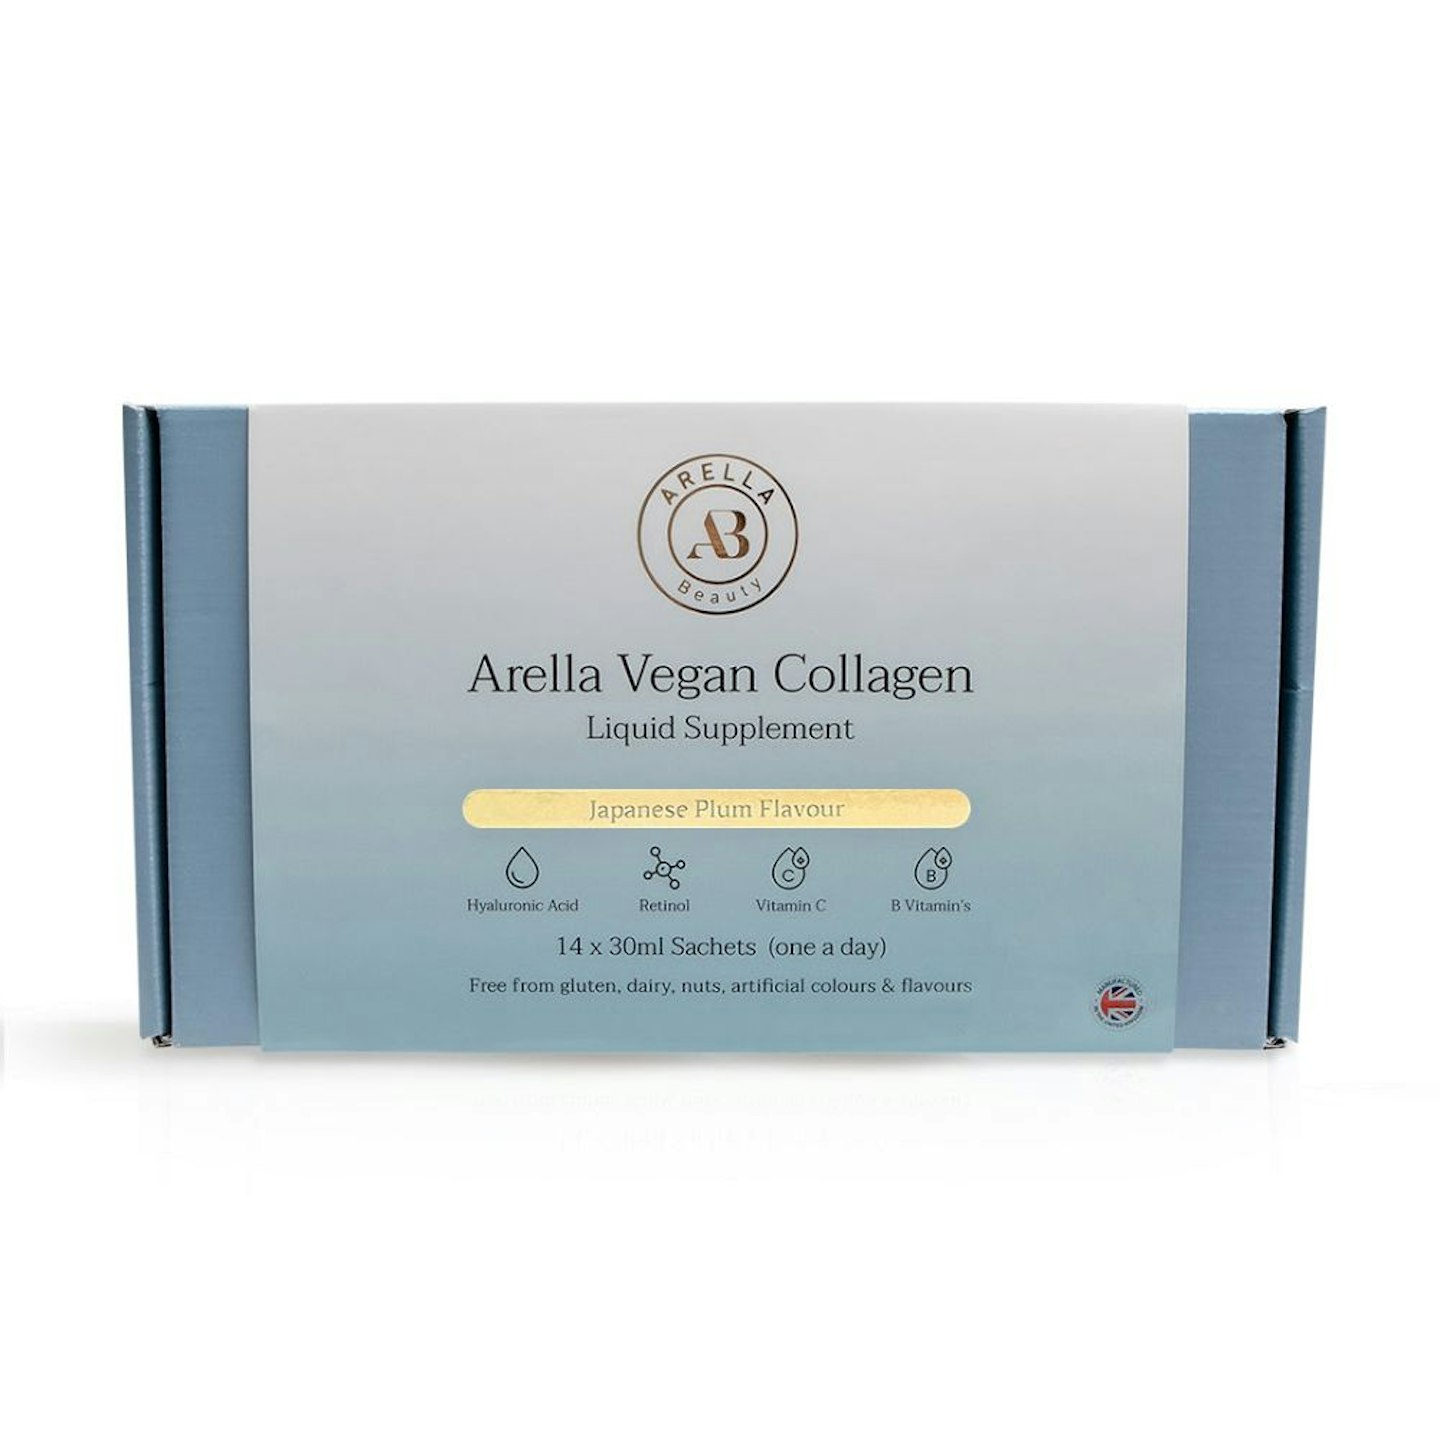 Arella Vegan Collagen